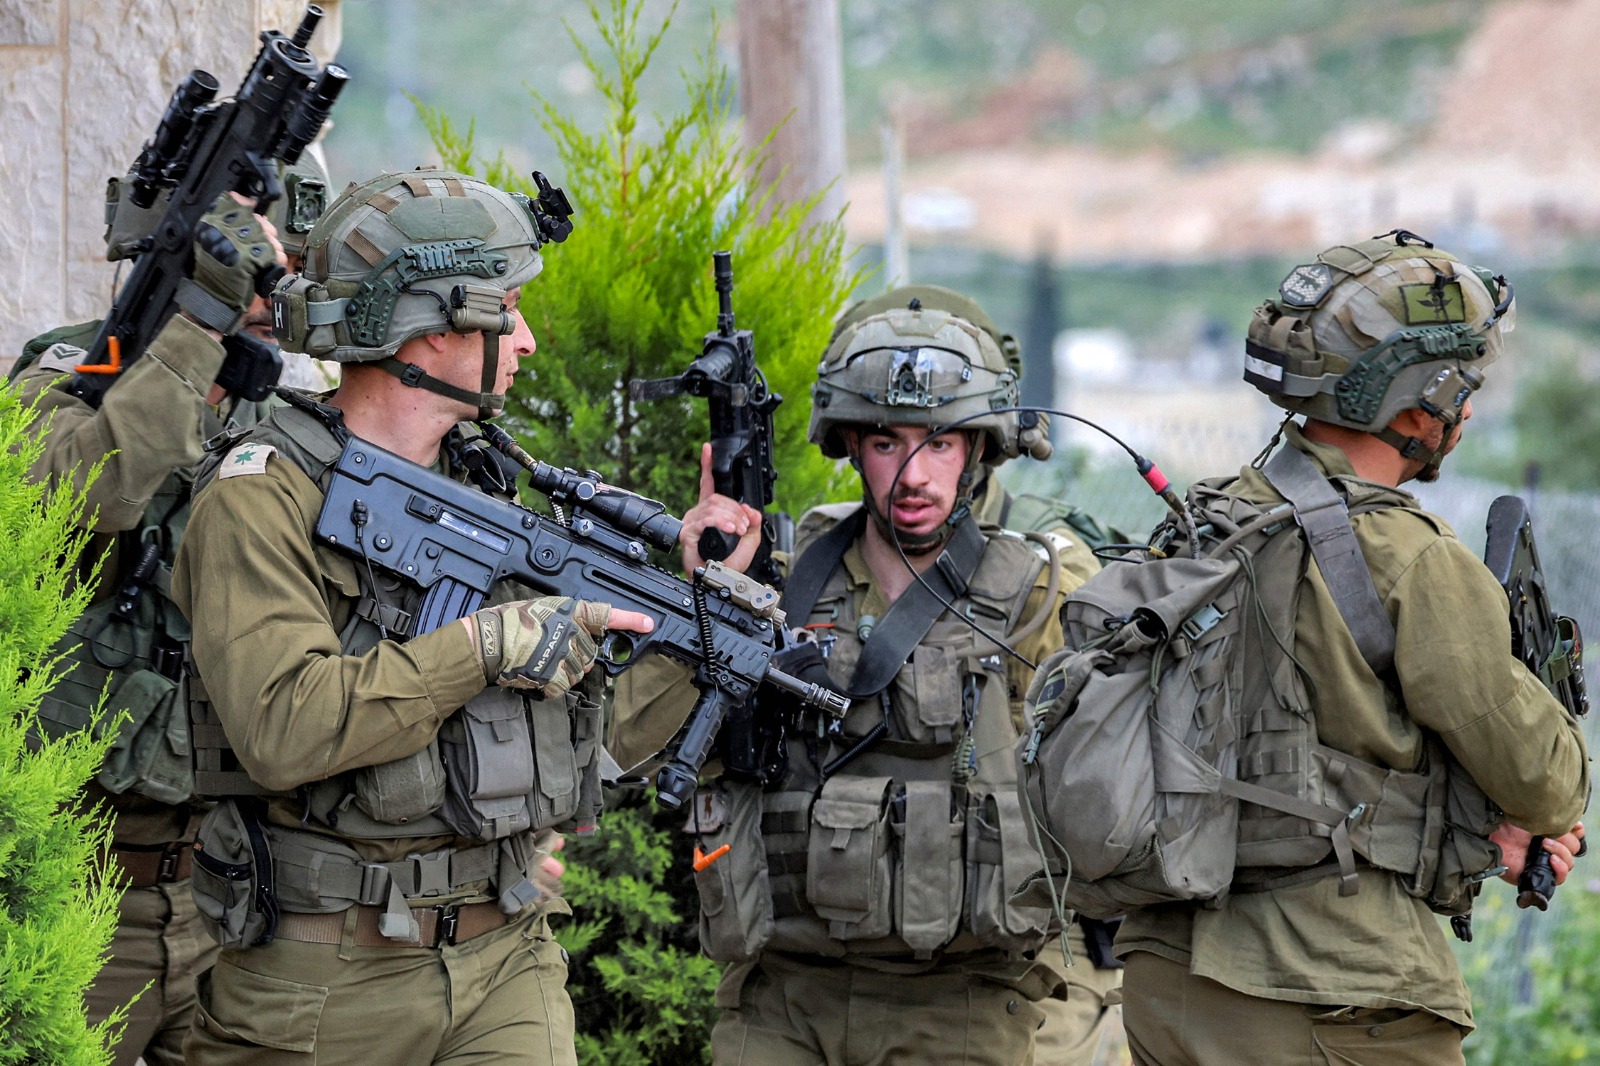 جيش الاحتلال يقيل ضابطين لانسحاب سريتهما من معركة غزة